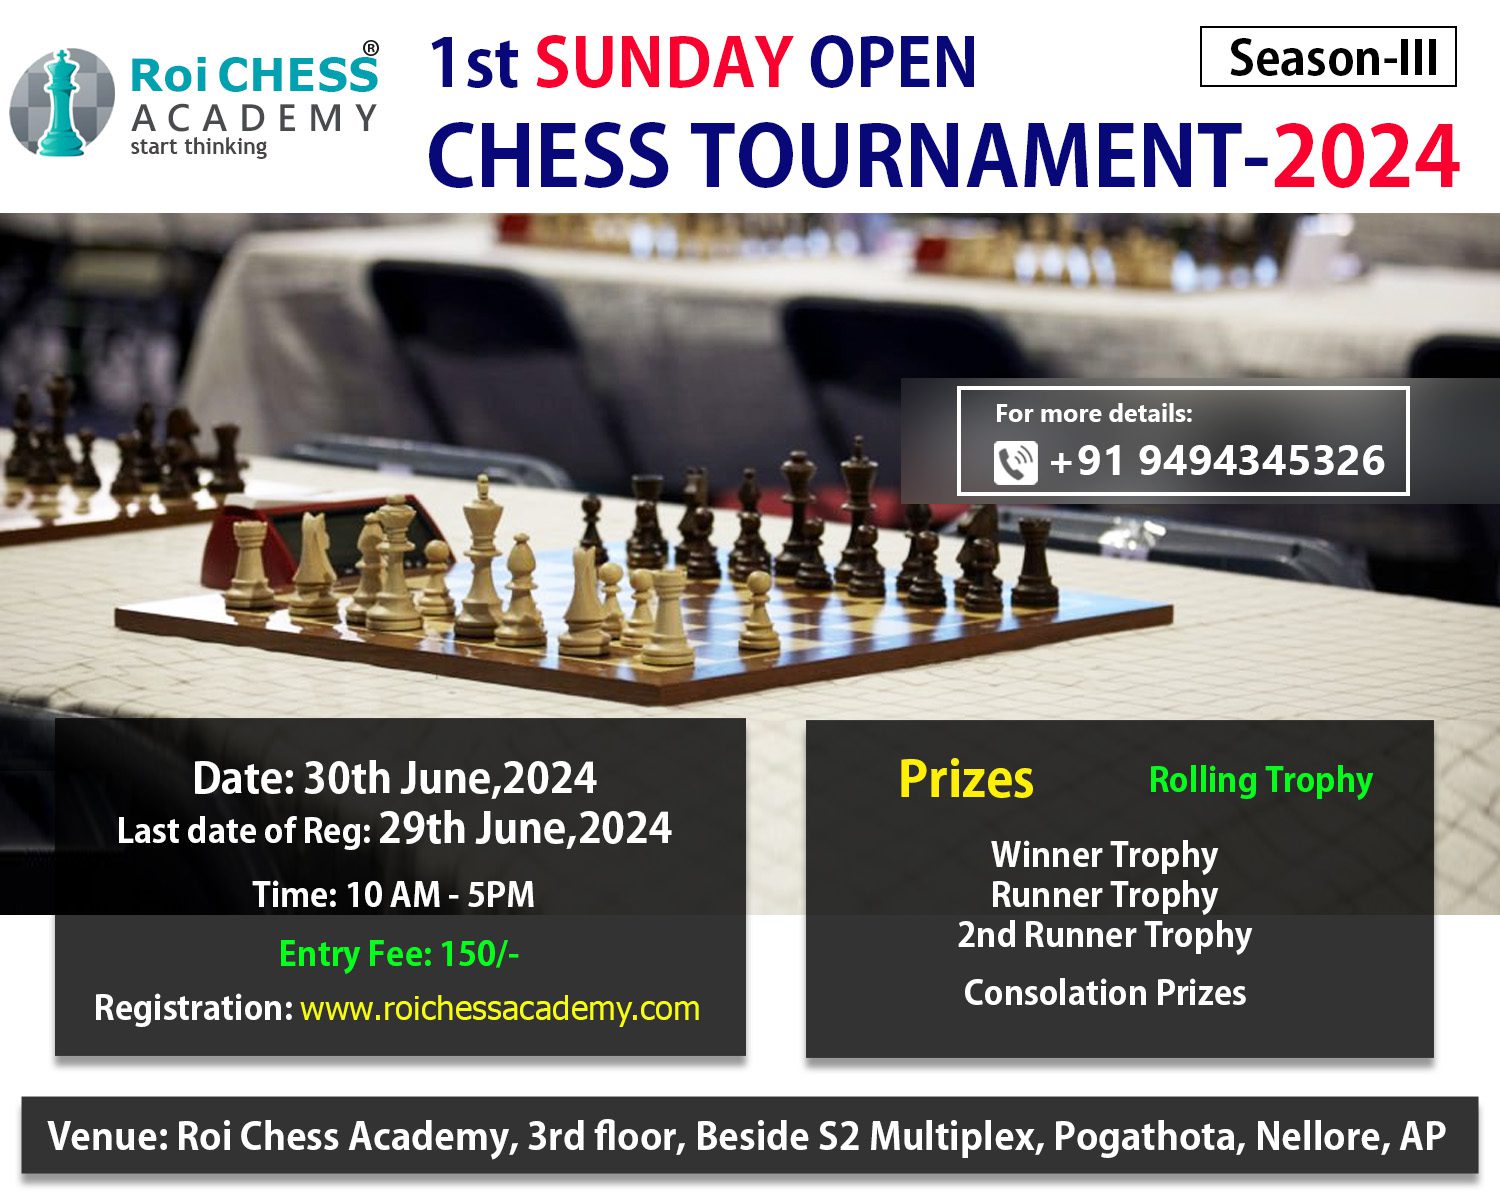 Sunday Chess Tournament-2024